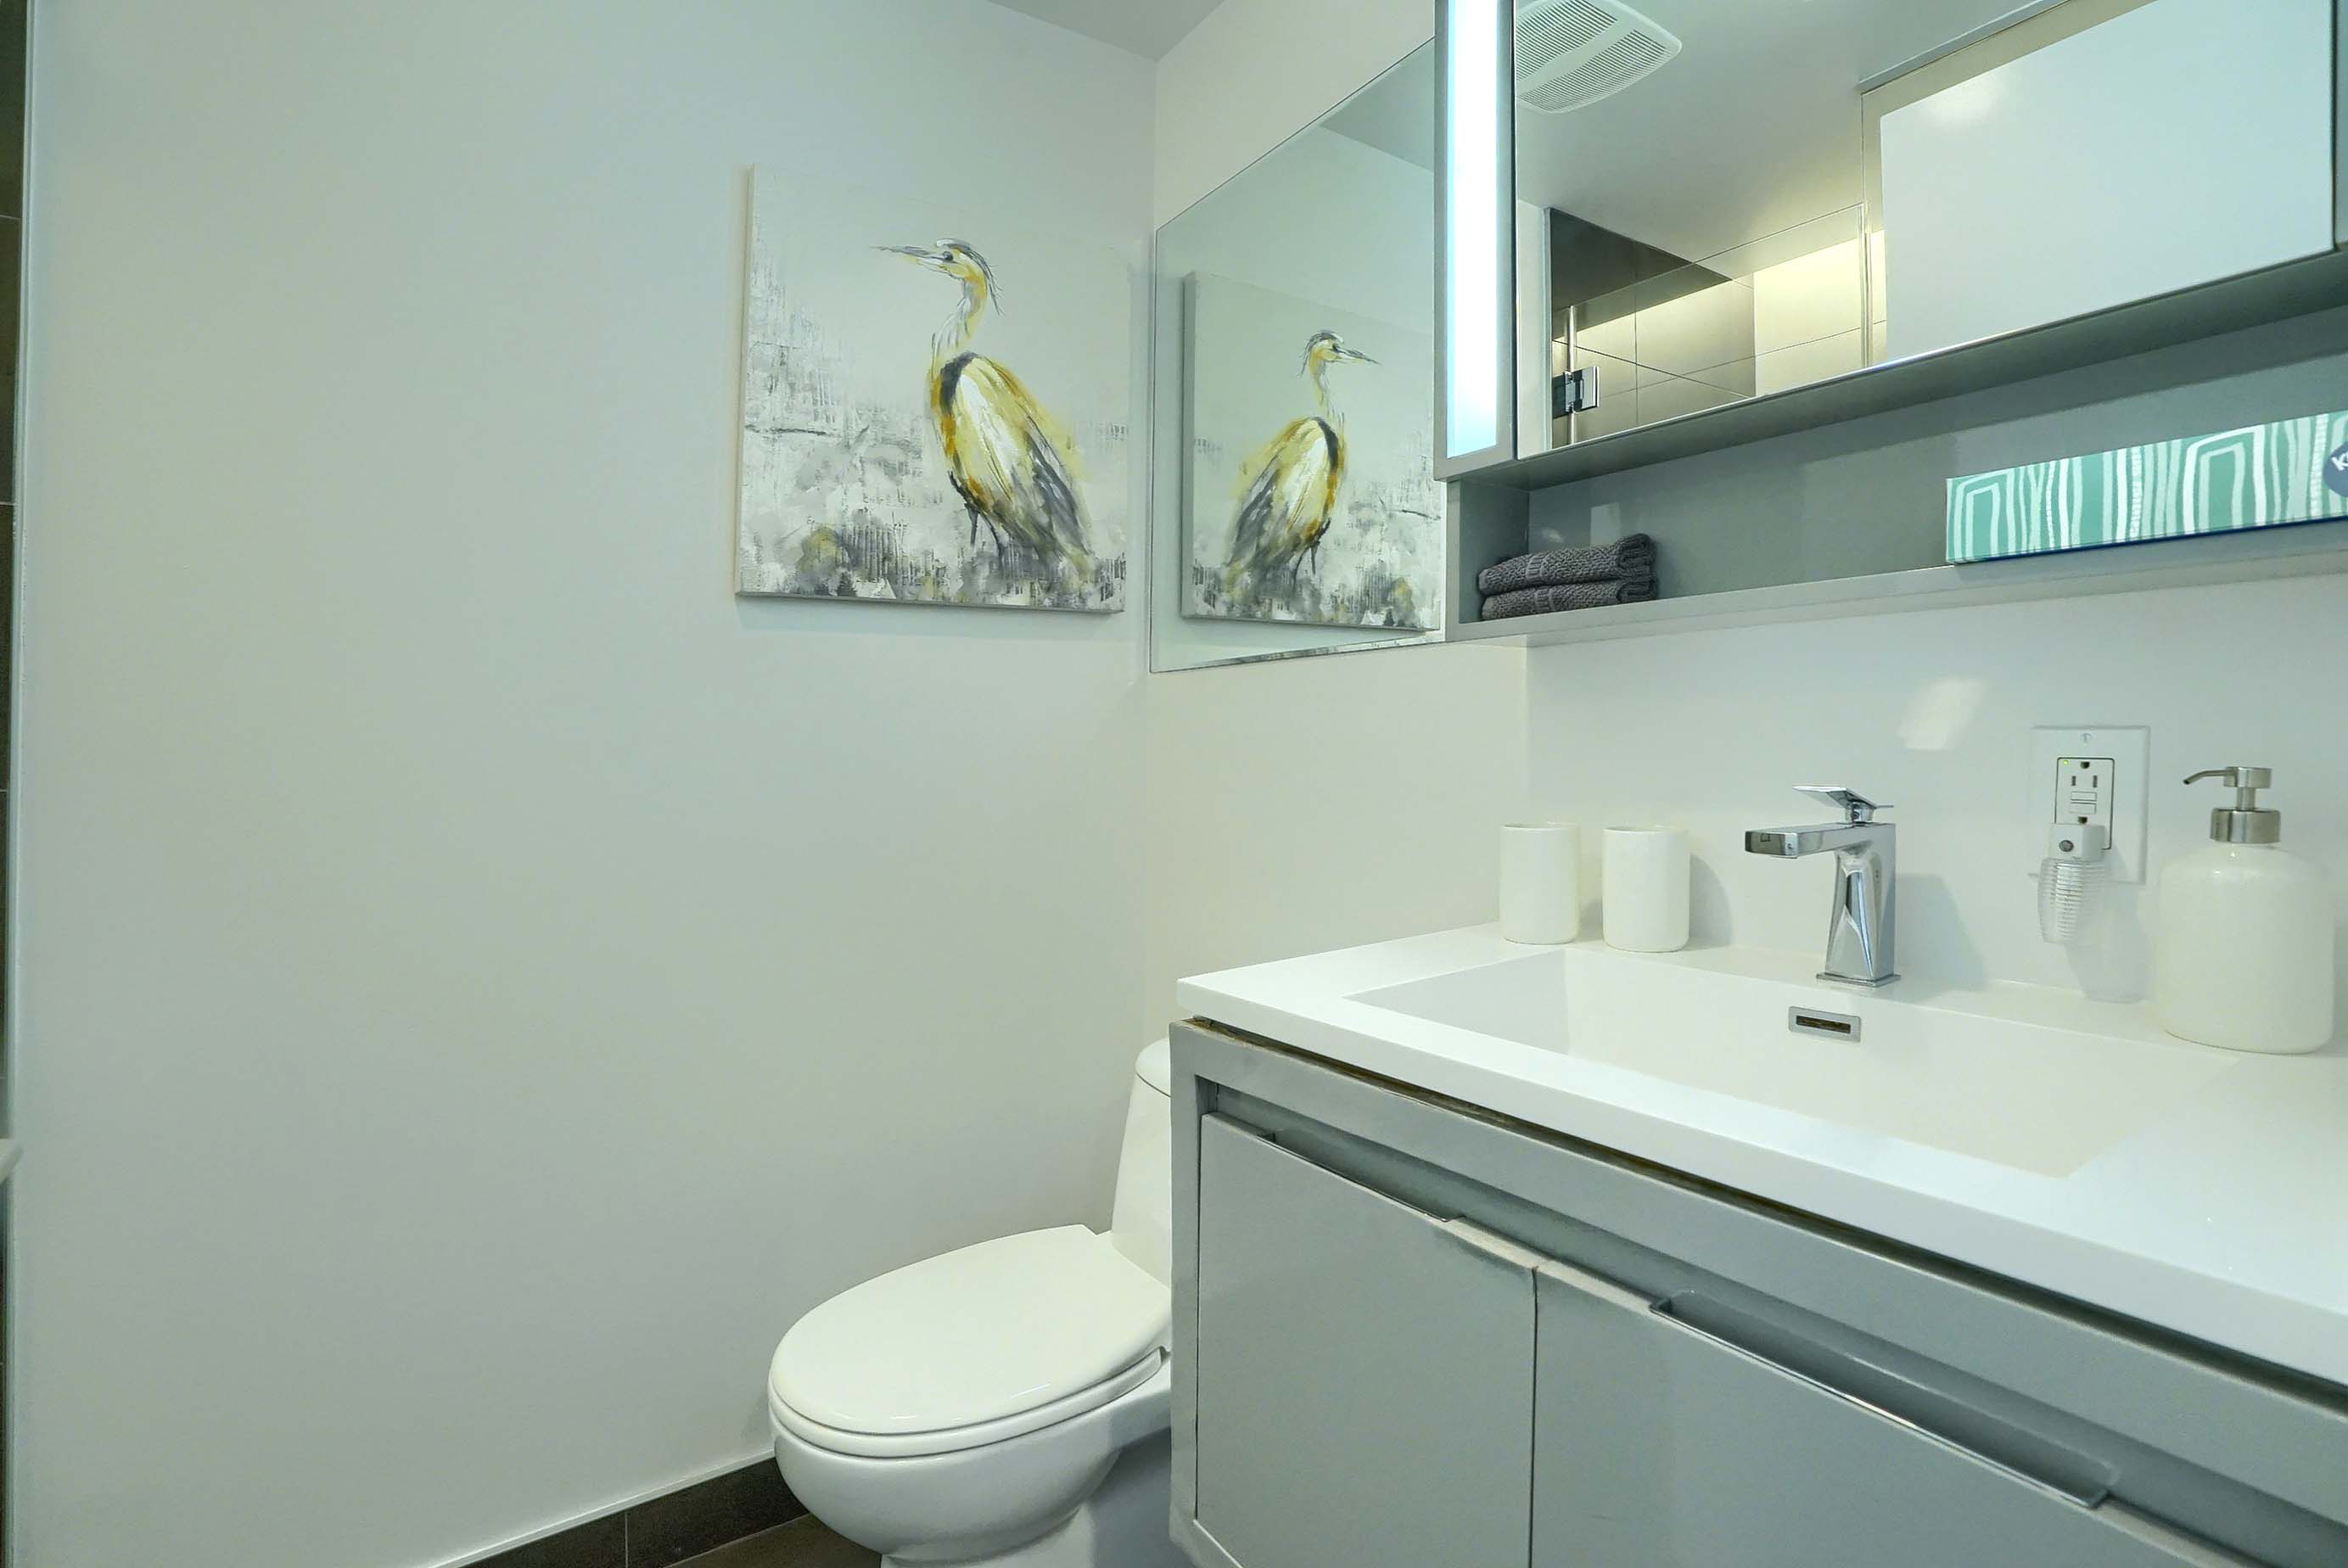 Vue de la salle de bain montrant le lavabo blanc surdimensionné avec robinet design, comptoir blanc spacieux, toilettes et miroirs tout autour dans cette location corporative meublée à Montréal